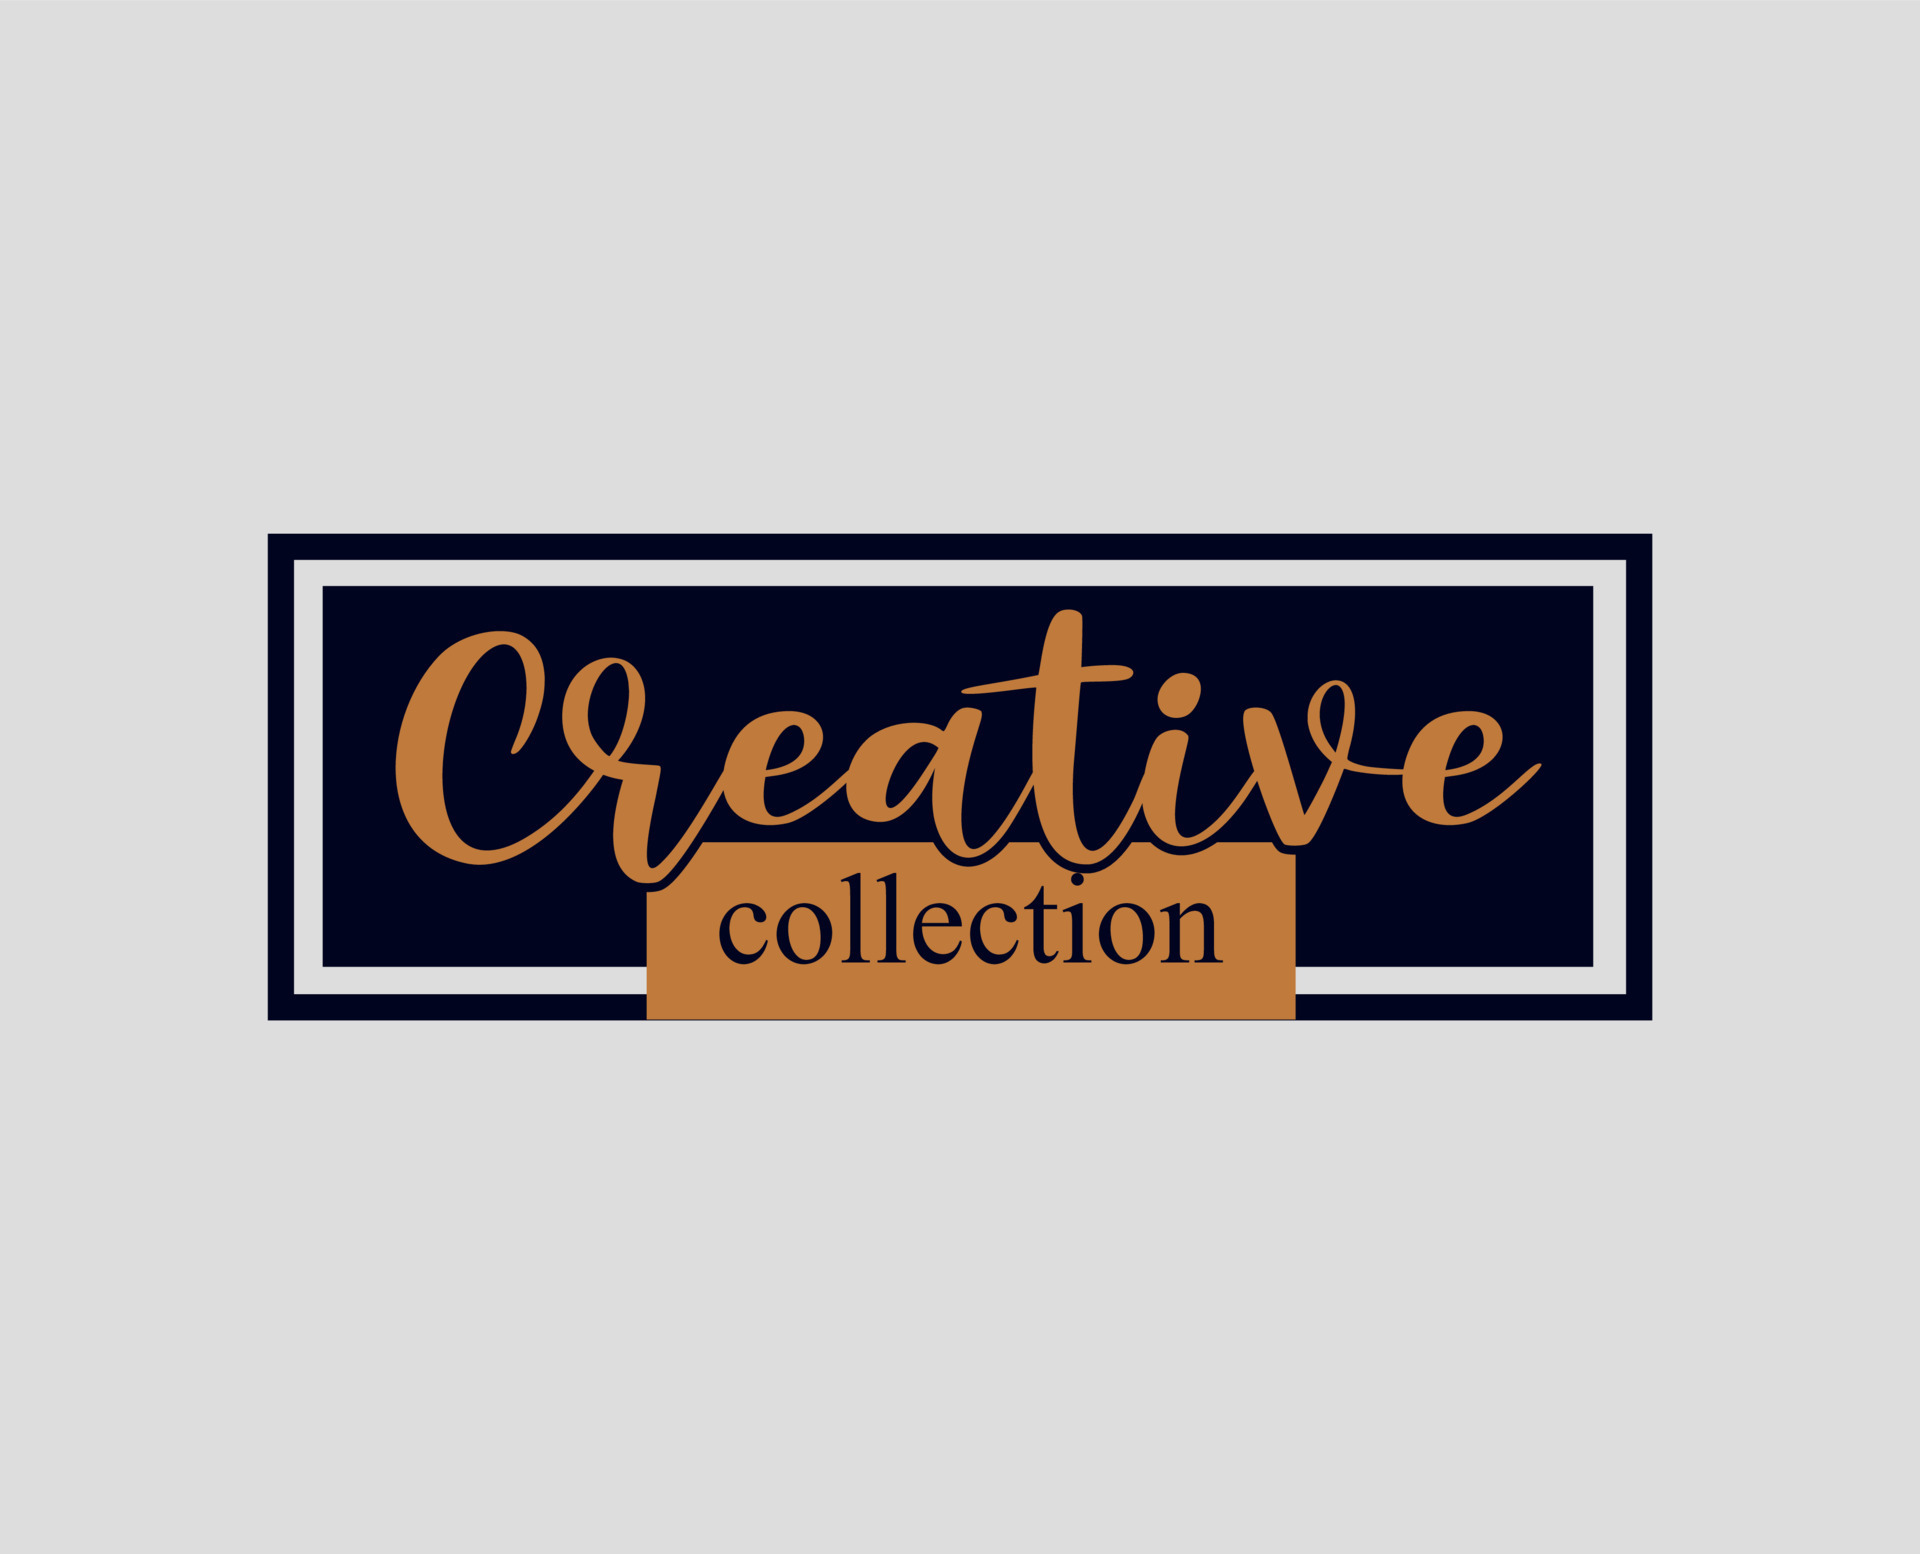 Creative Collection Brand logo. Creative collection cloth brand logo.  19598636 Vector Art at Vecteezy